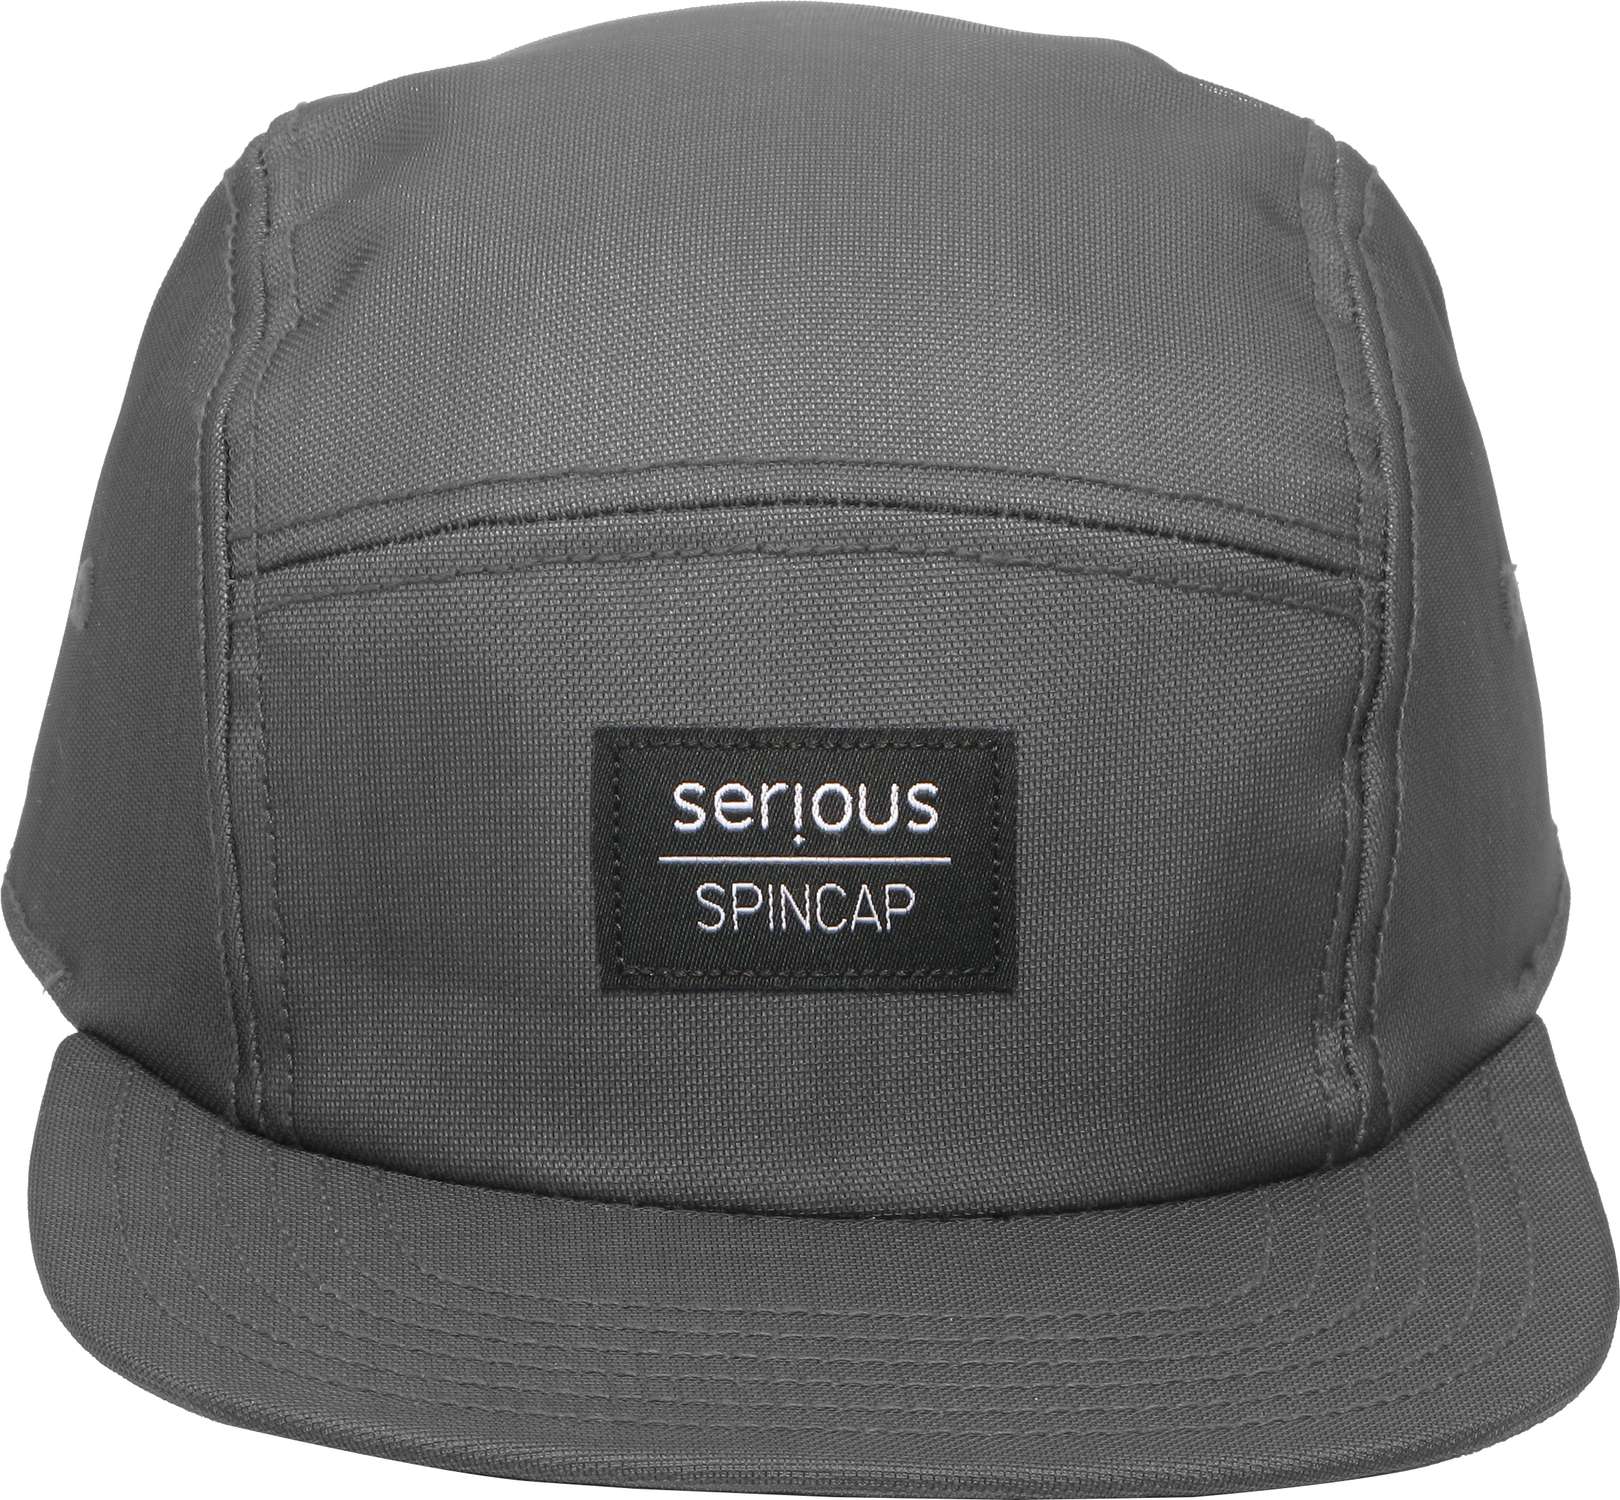 Serious B-Boy Gear - Premium Spincap / Headspin-Cap - Grau